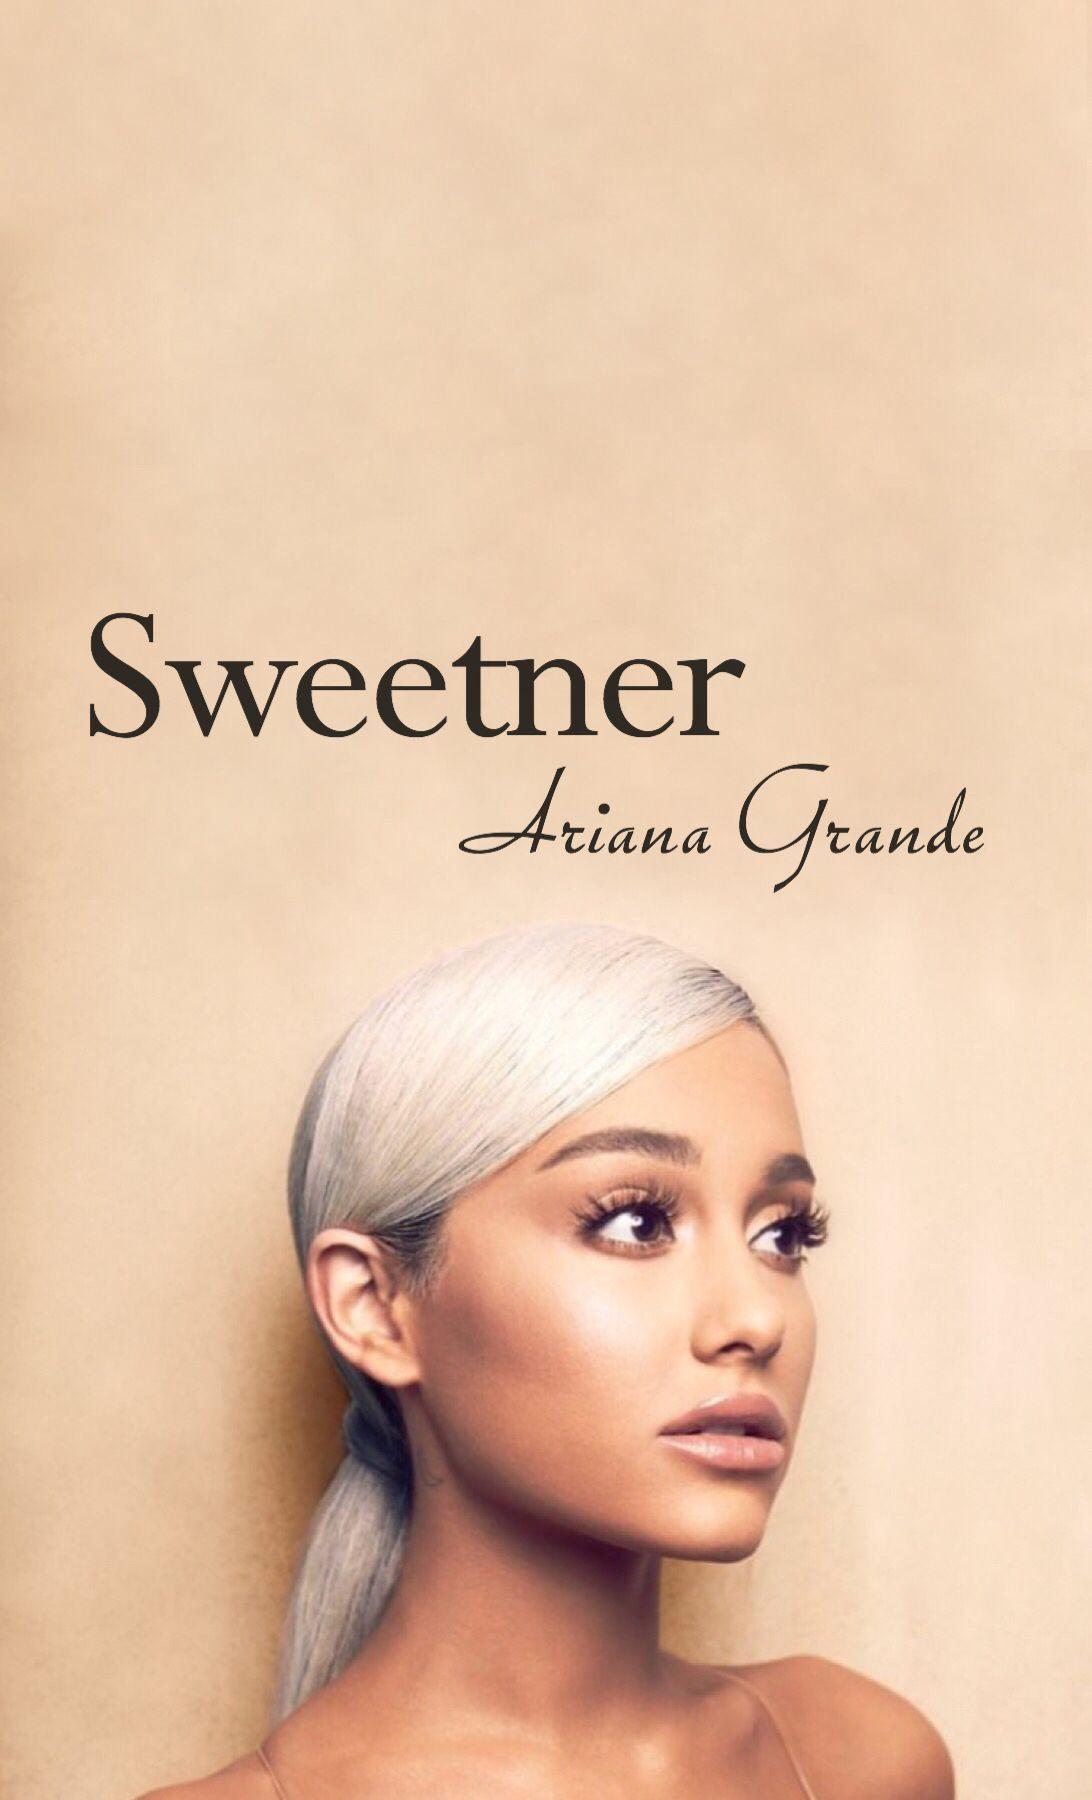 Sweetner Album Wallpaper Ariana Grande. Ariana Grande